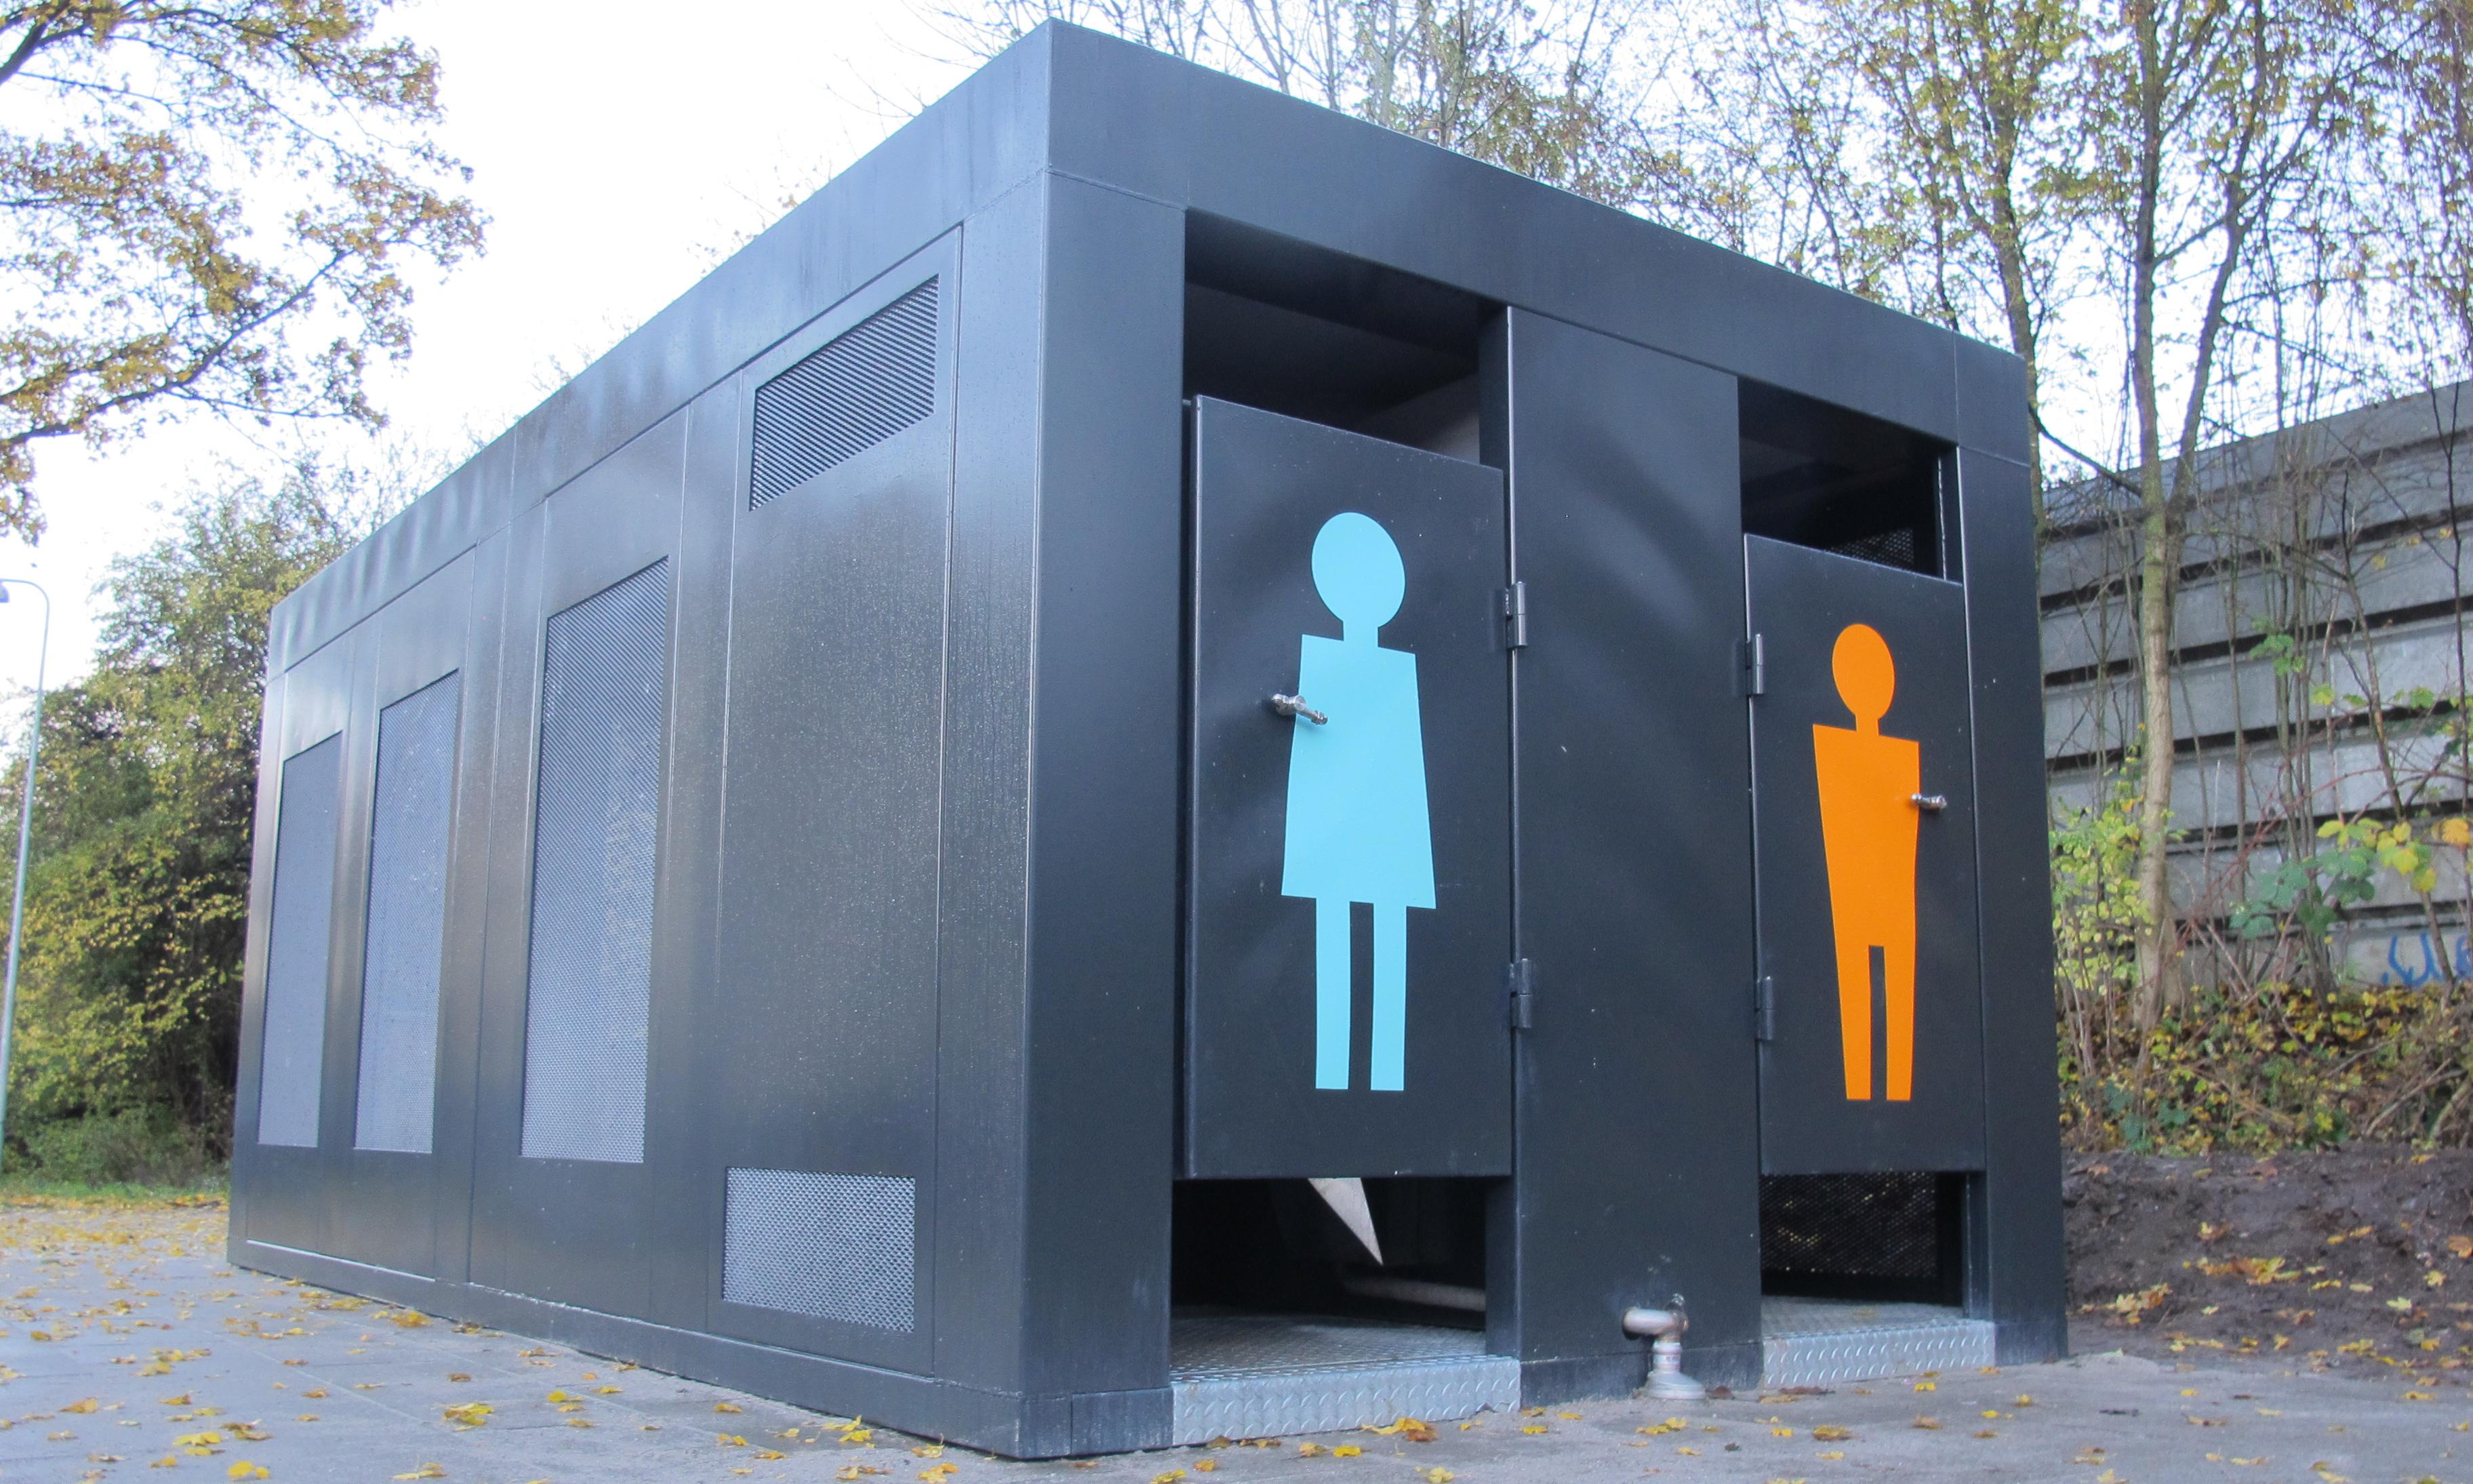 Hellestedet på Enggade har toiletfaciliteter i den ene ende og opholdsrum i den anden. Det er bygget i samarbejde med brugerne. Idéen er også ved at blive testet af i byer som Aarhus og København. 